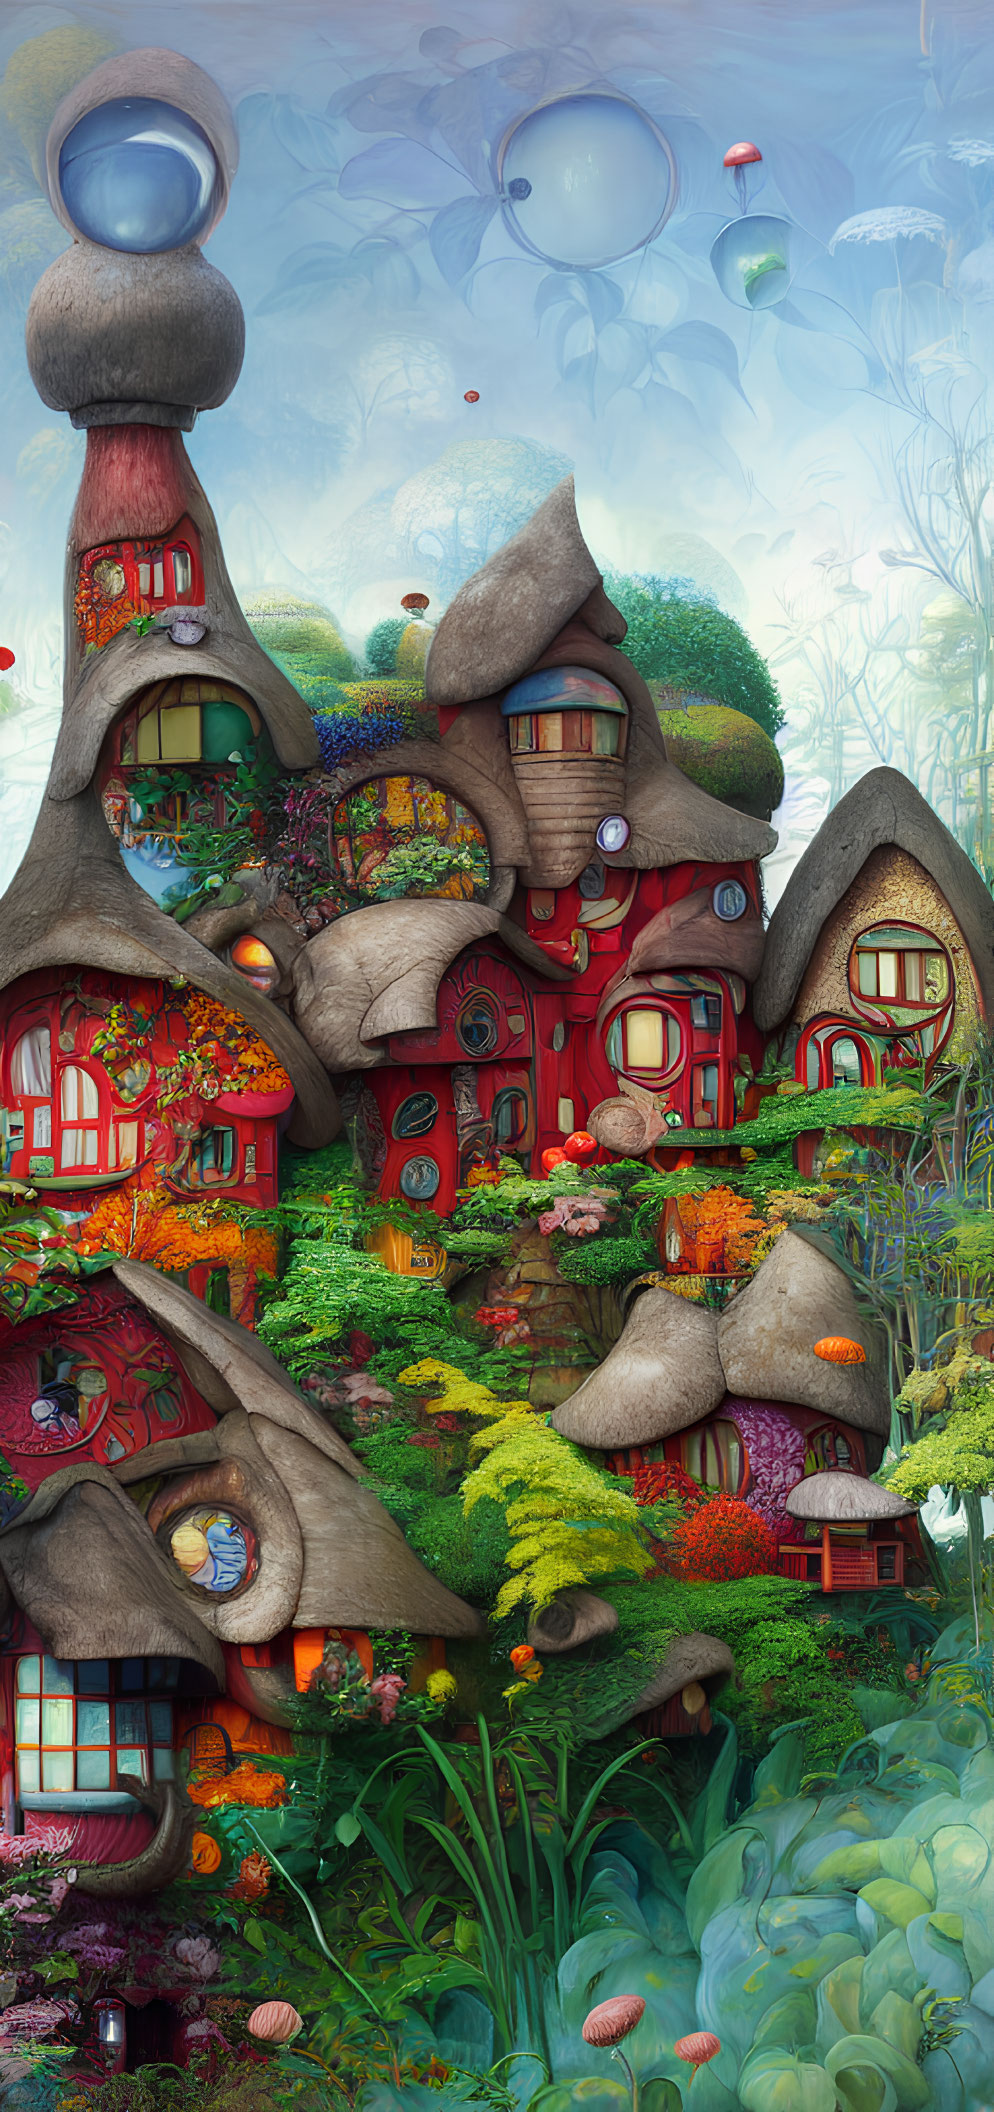 Colorful Vertical Artwork: Fantastical Mushroom Village in Dreamy Landscape